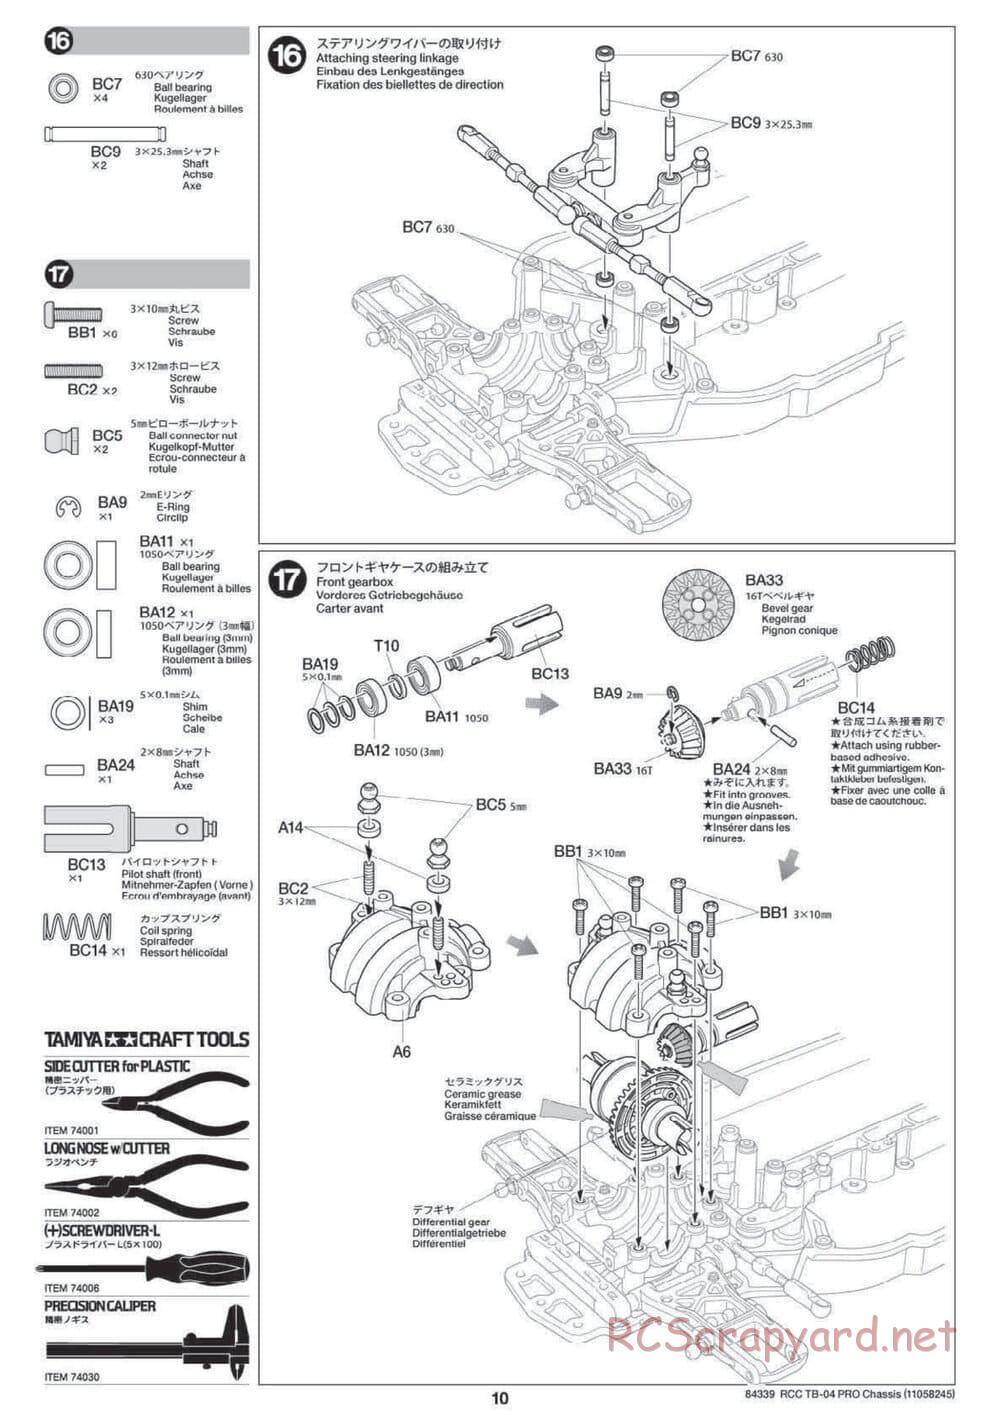 Tamiya - TB-04 Pro Chassis - Manual - Page 10